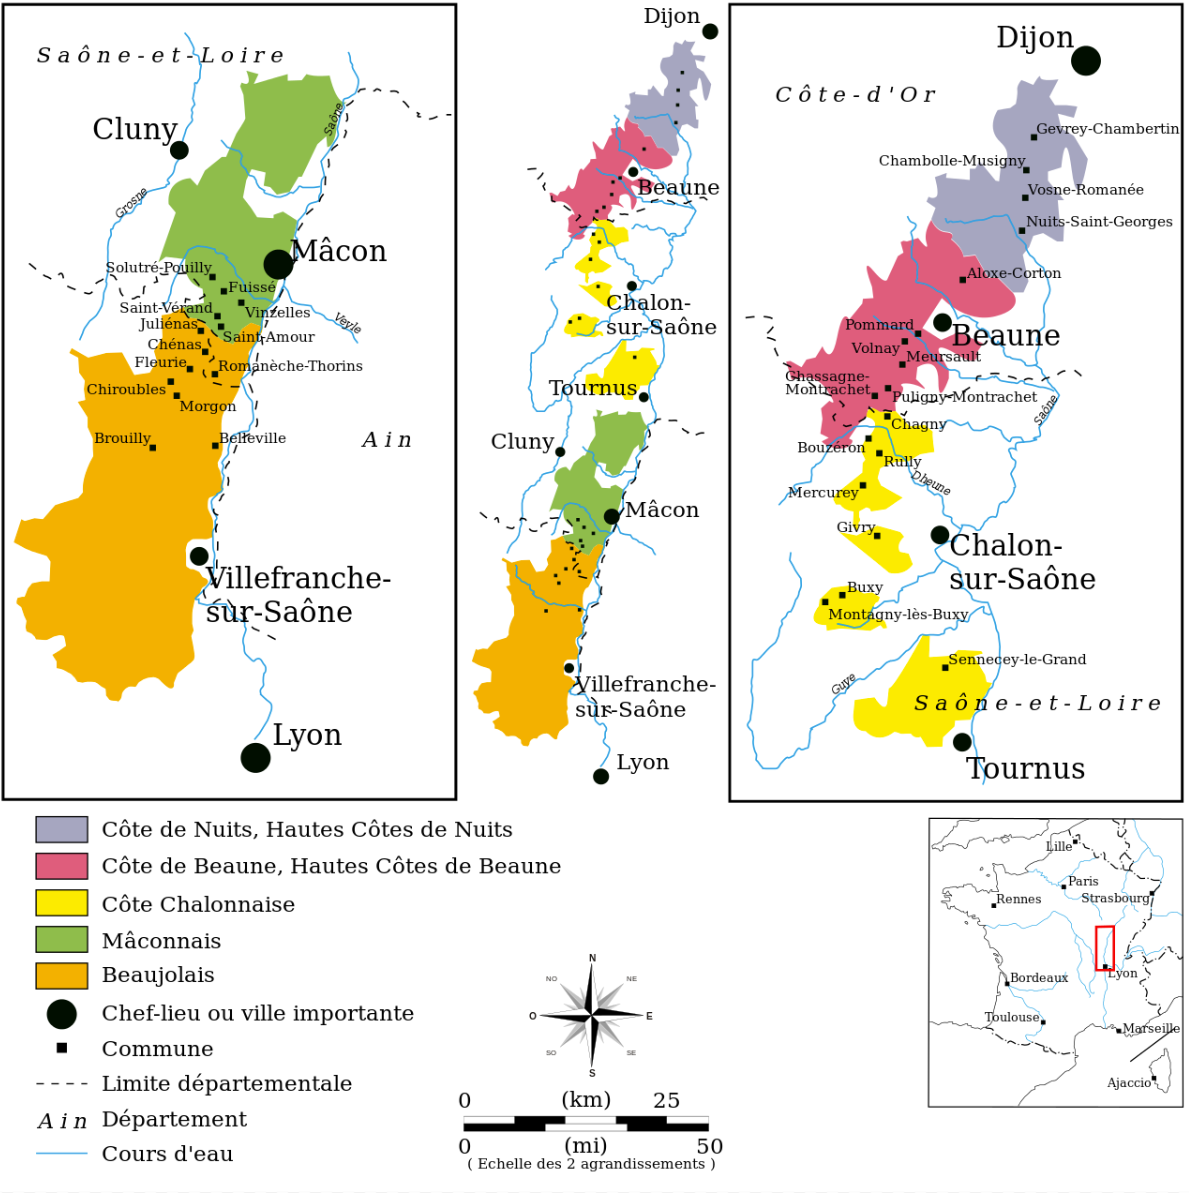 Kort over Bourgogne